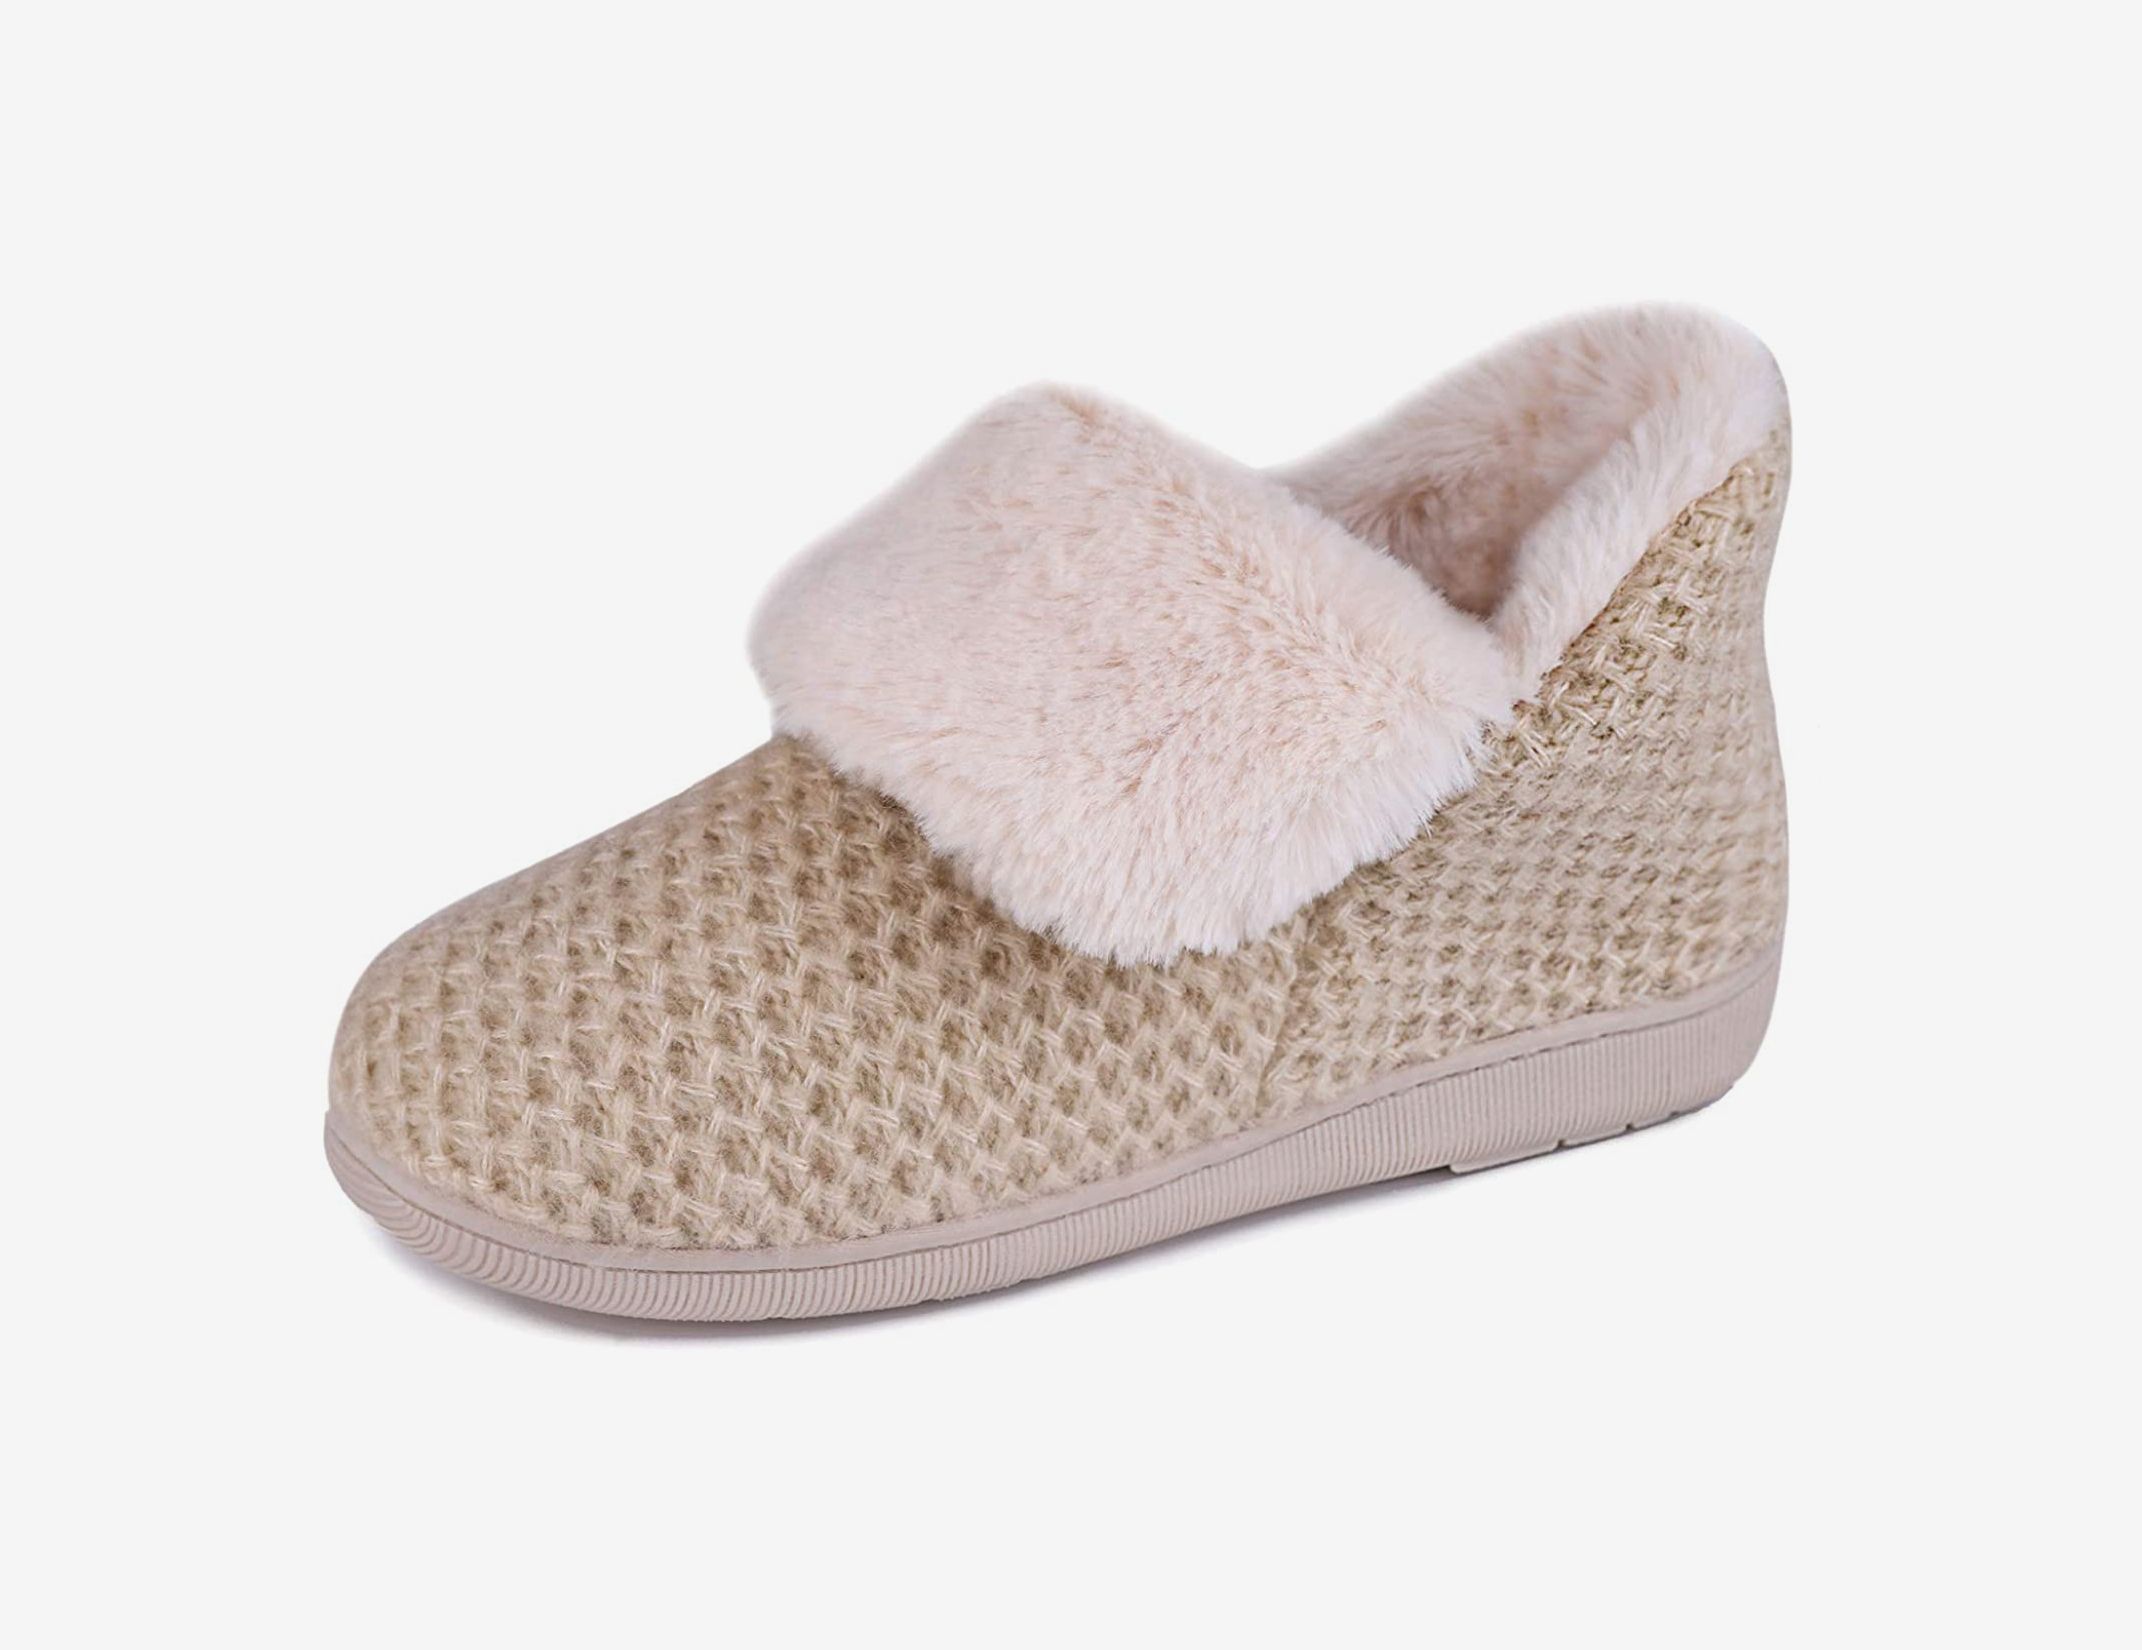 shop women's slippers